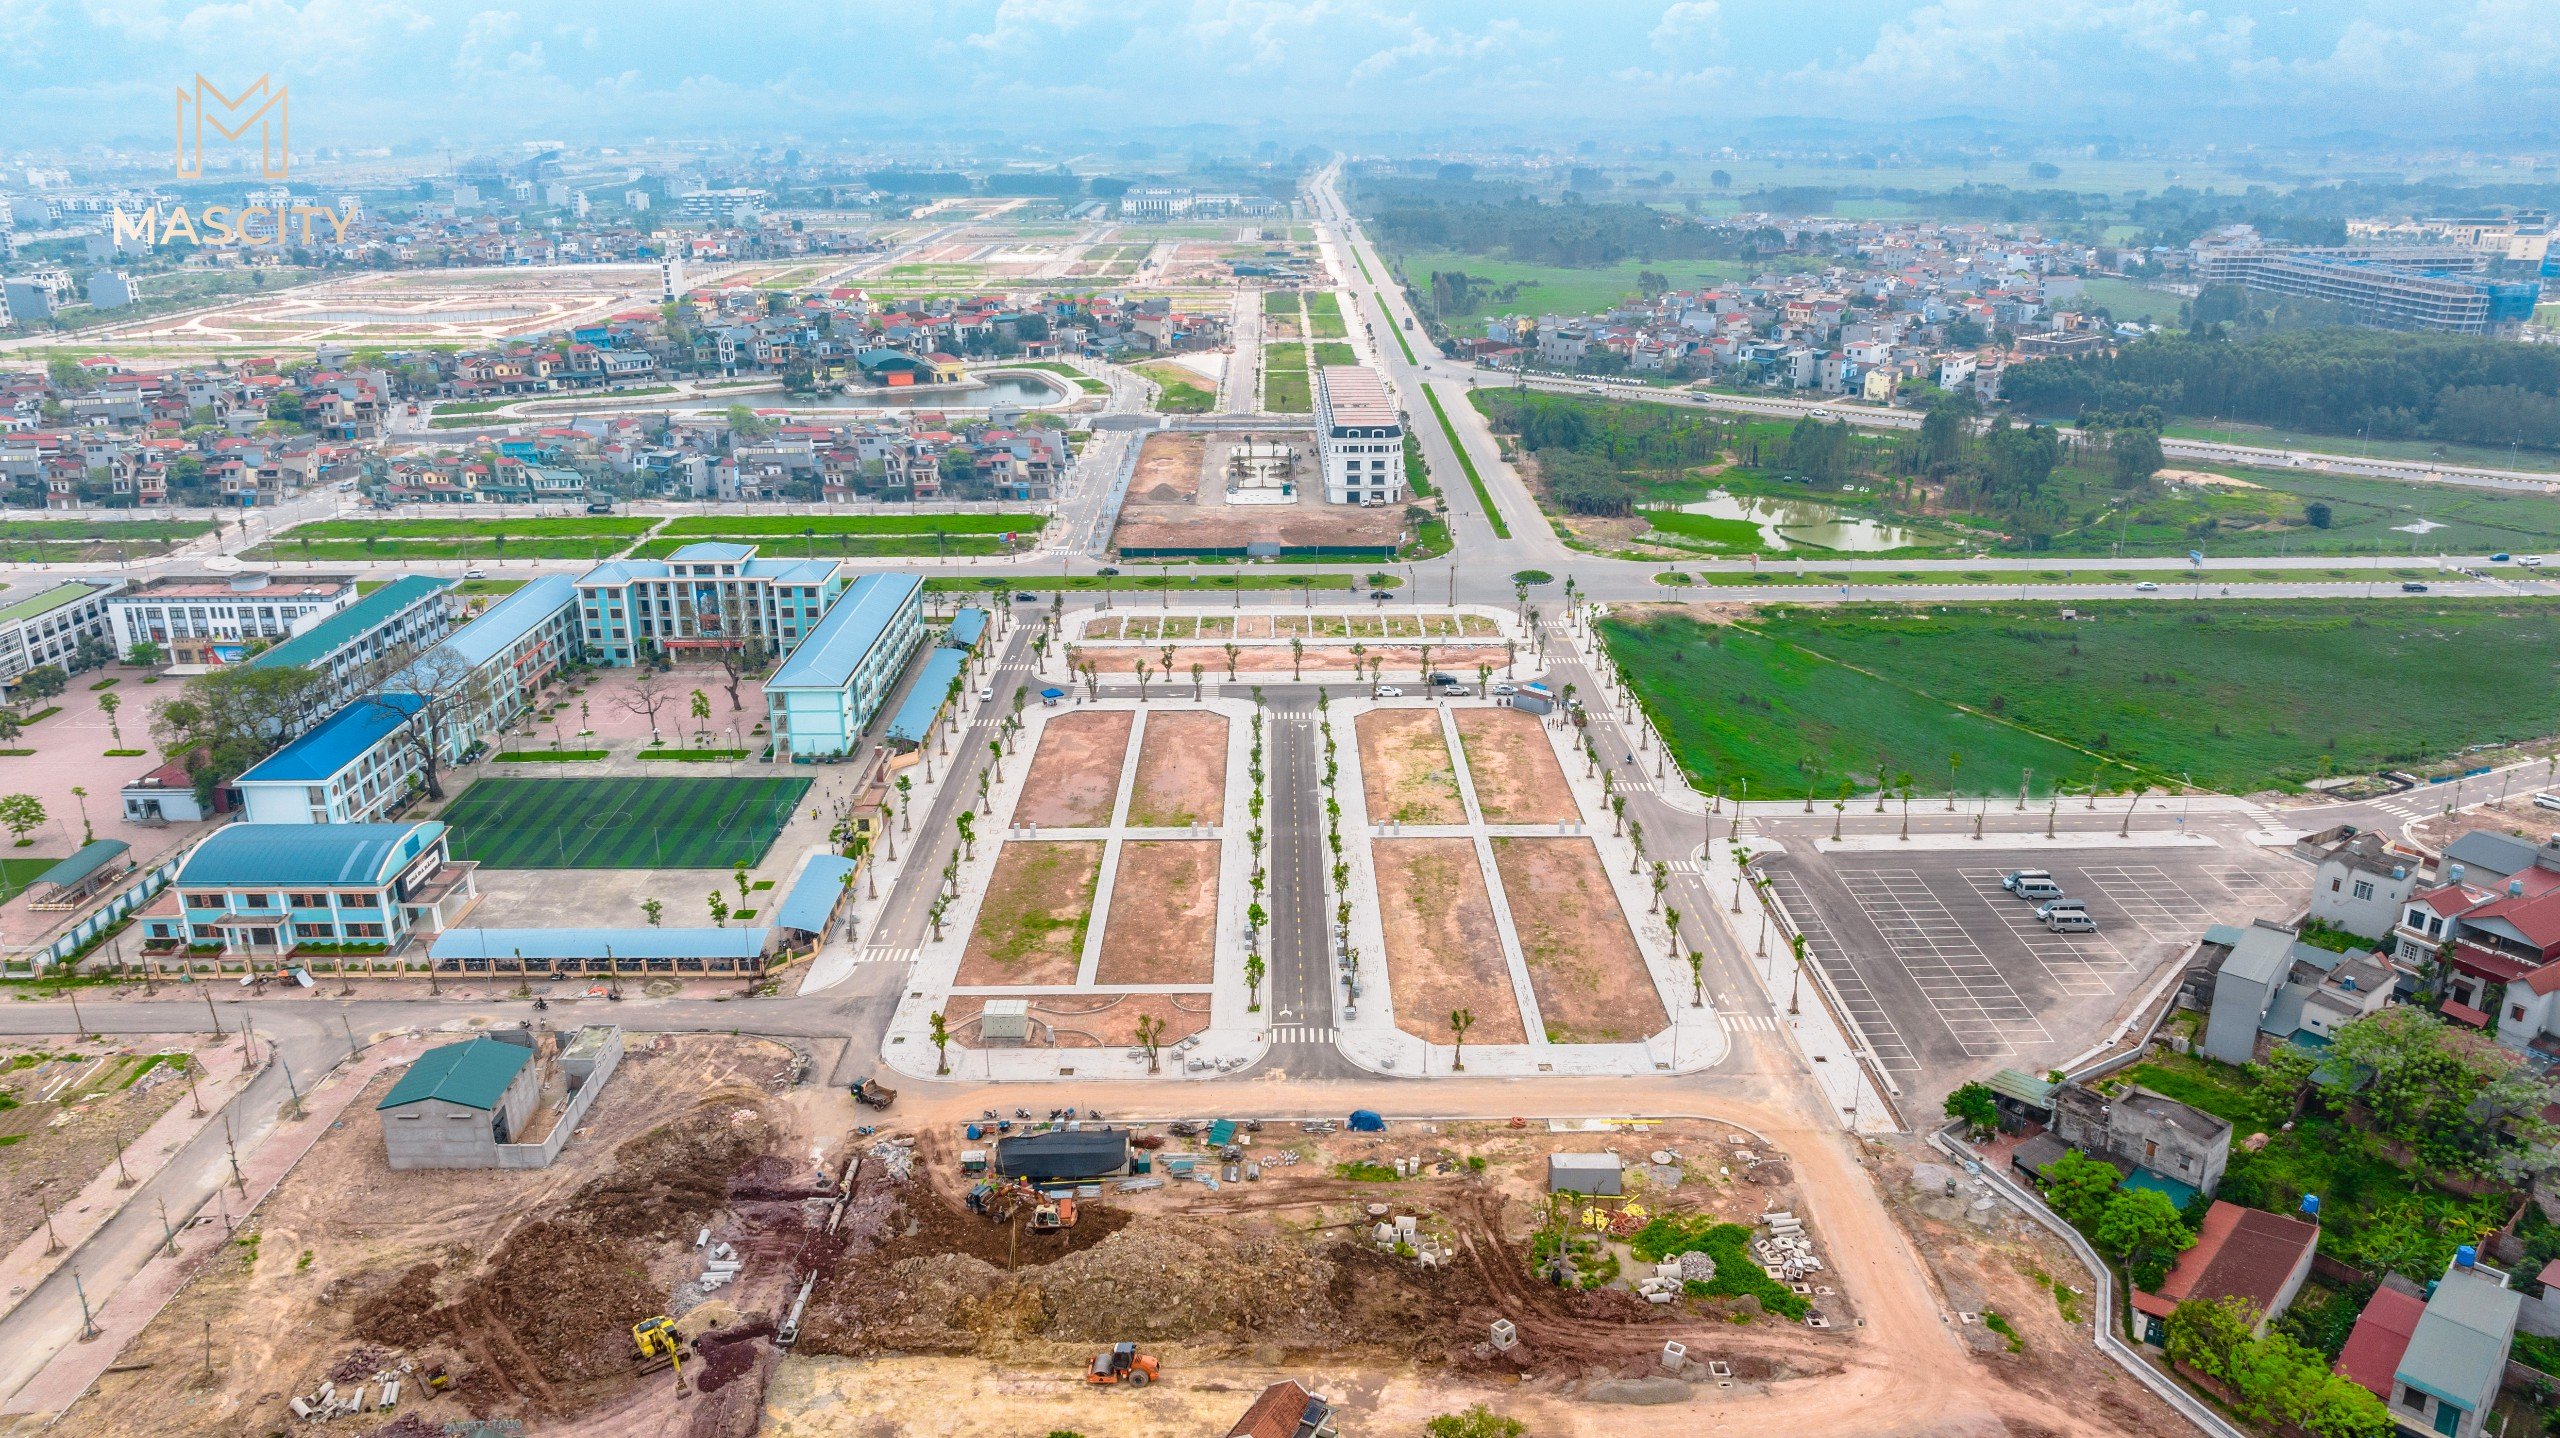 Bán đất nền trung tâm thành phố Bắc Giang, vị trí đắc địa, CK 6%, HTLS 0% đến 70% trong 12 tháng 9